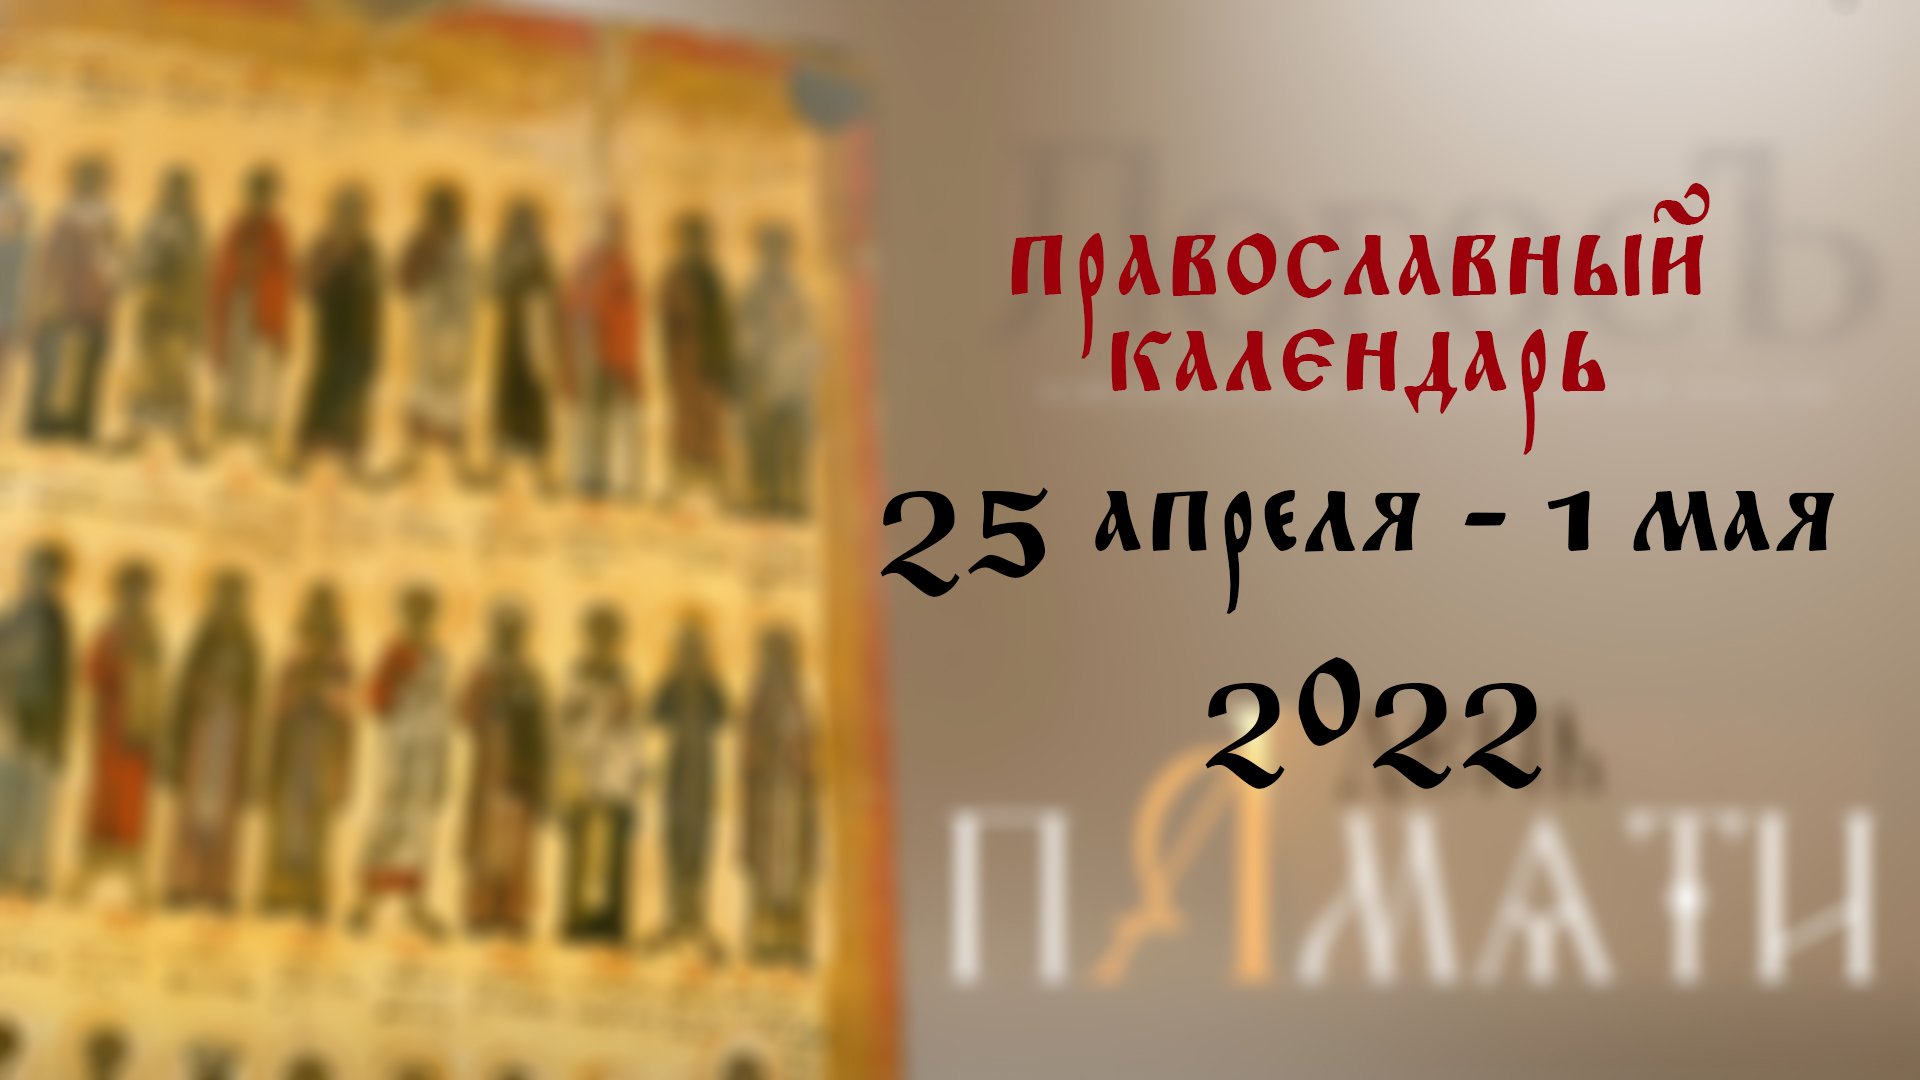 13 апреля православный календарь. С днем памяти святителей московских. С днем 25 июня православный. Большие православные праздники в 2023 году. Православный день 5 апреля.